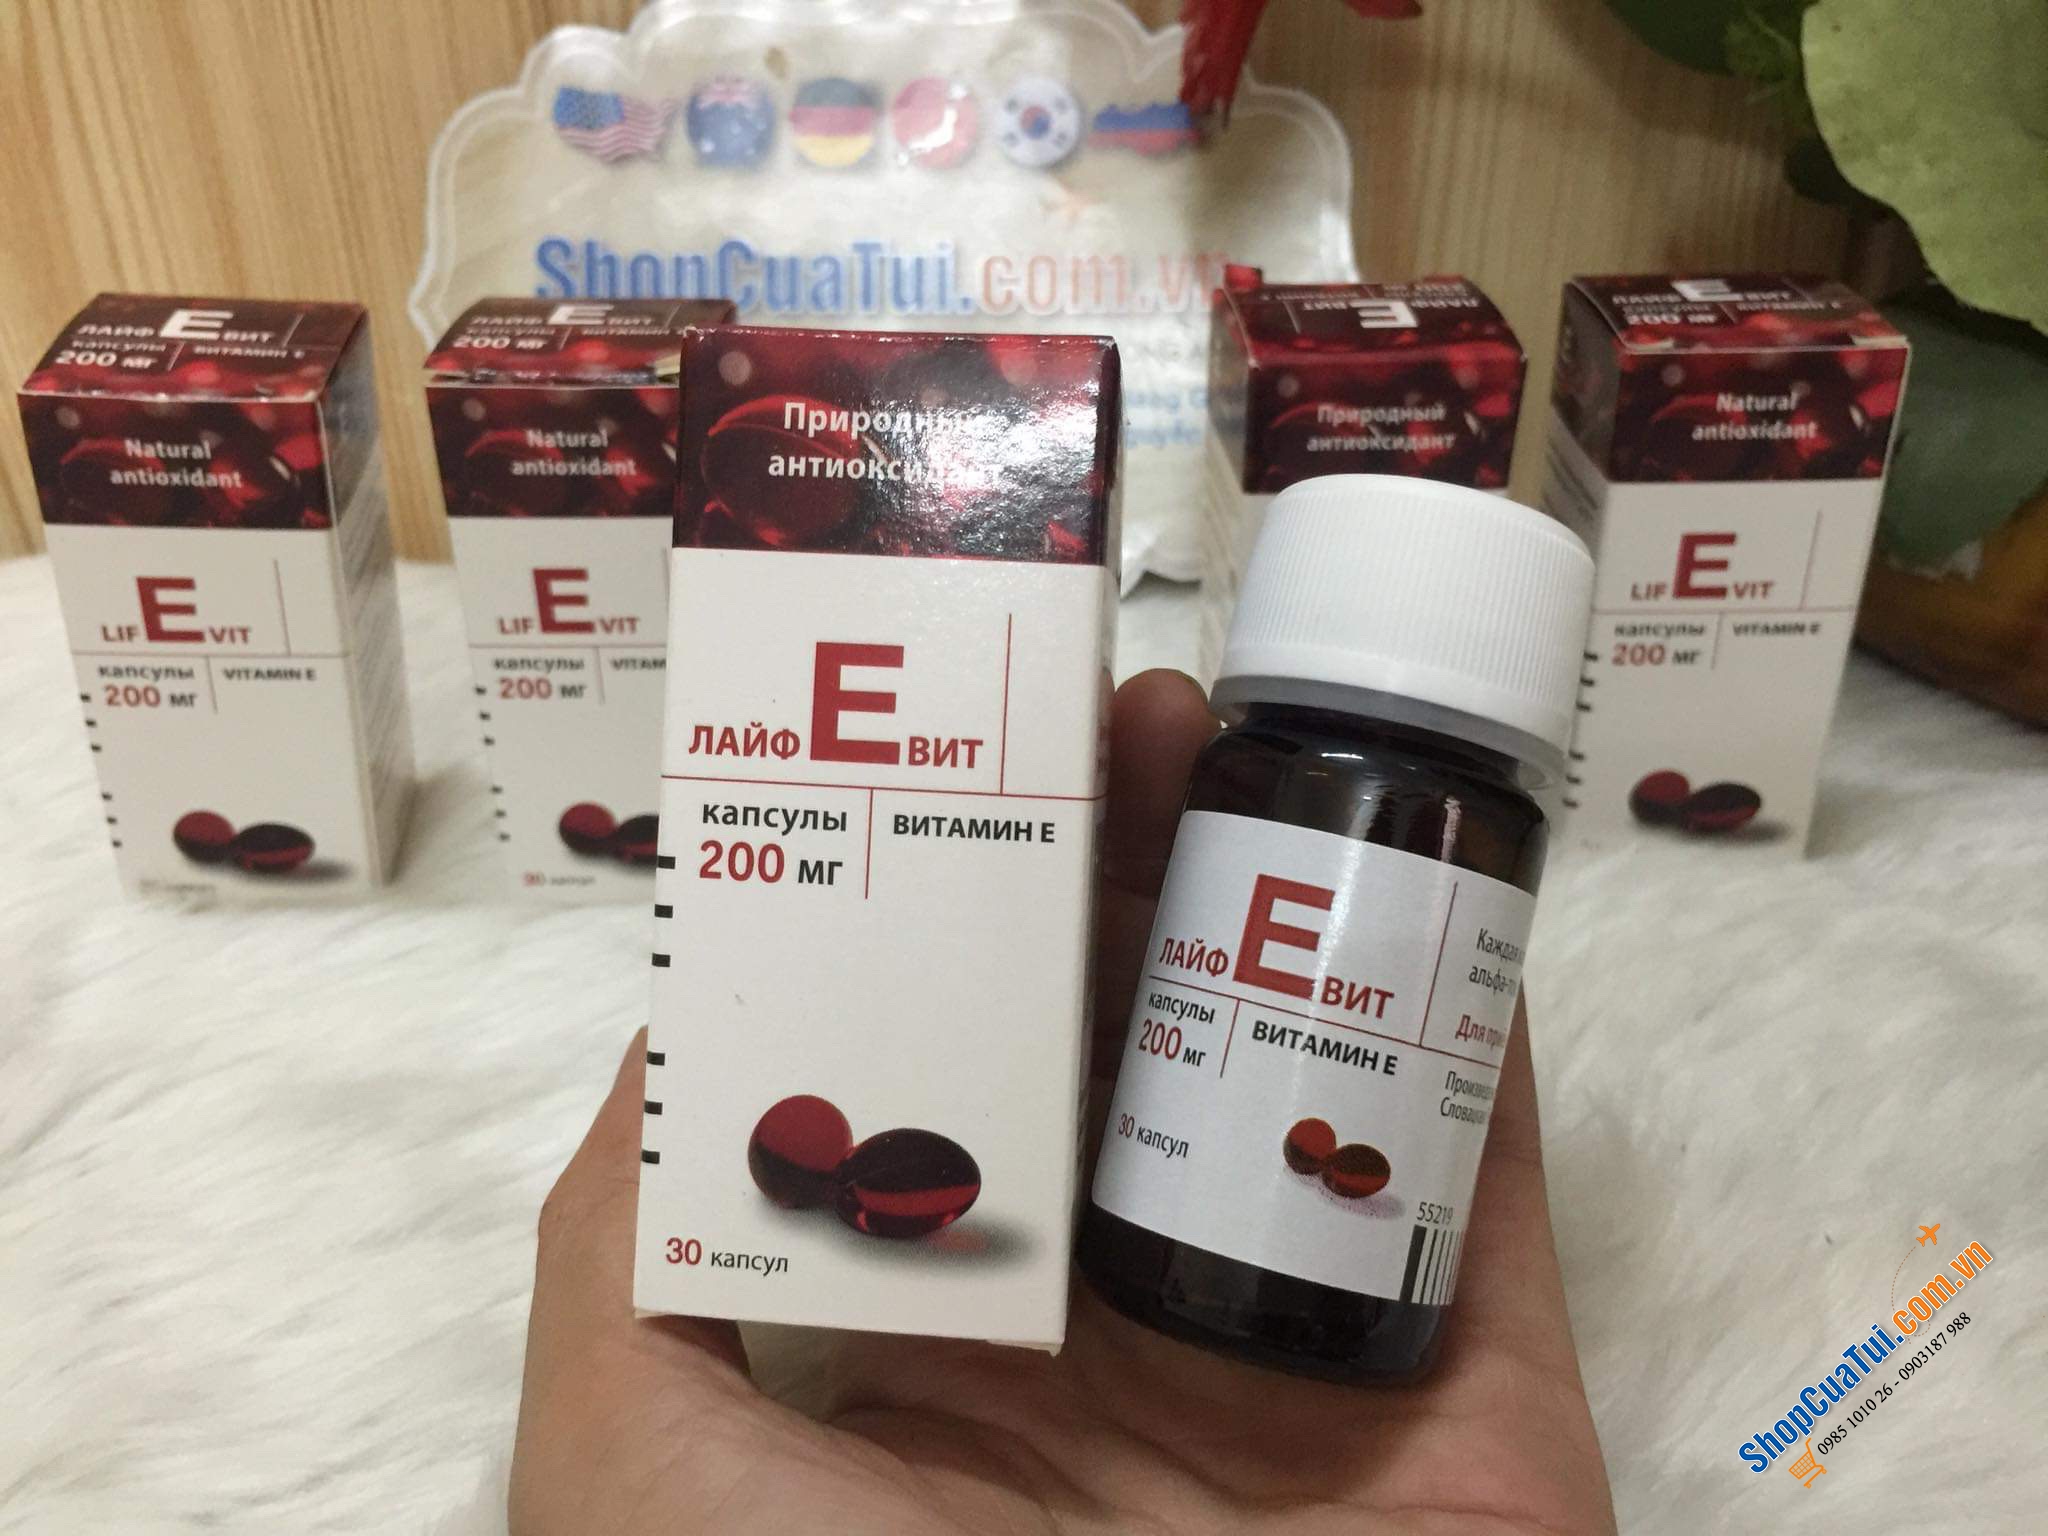 Vitamin E ZENTIVA 30 viên của Nga